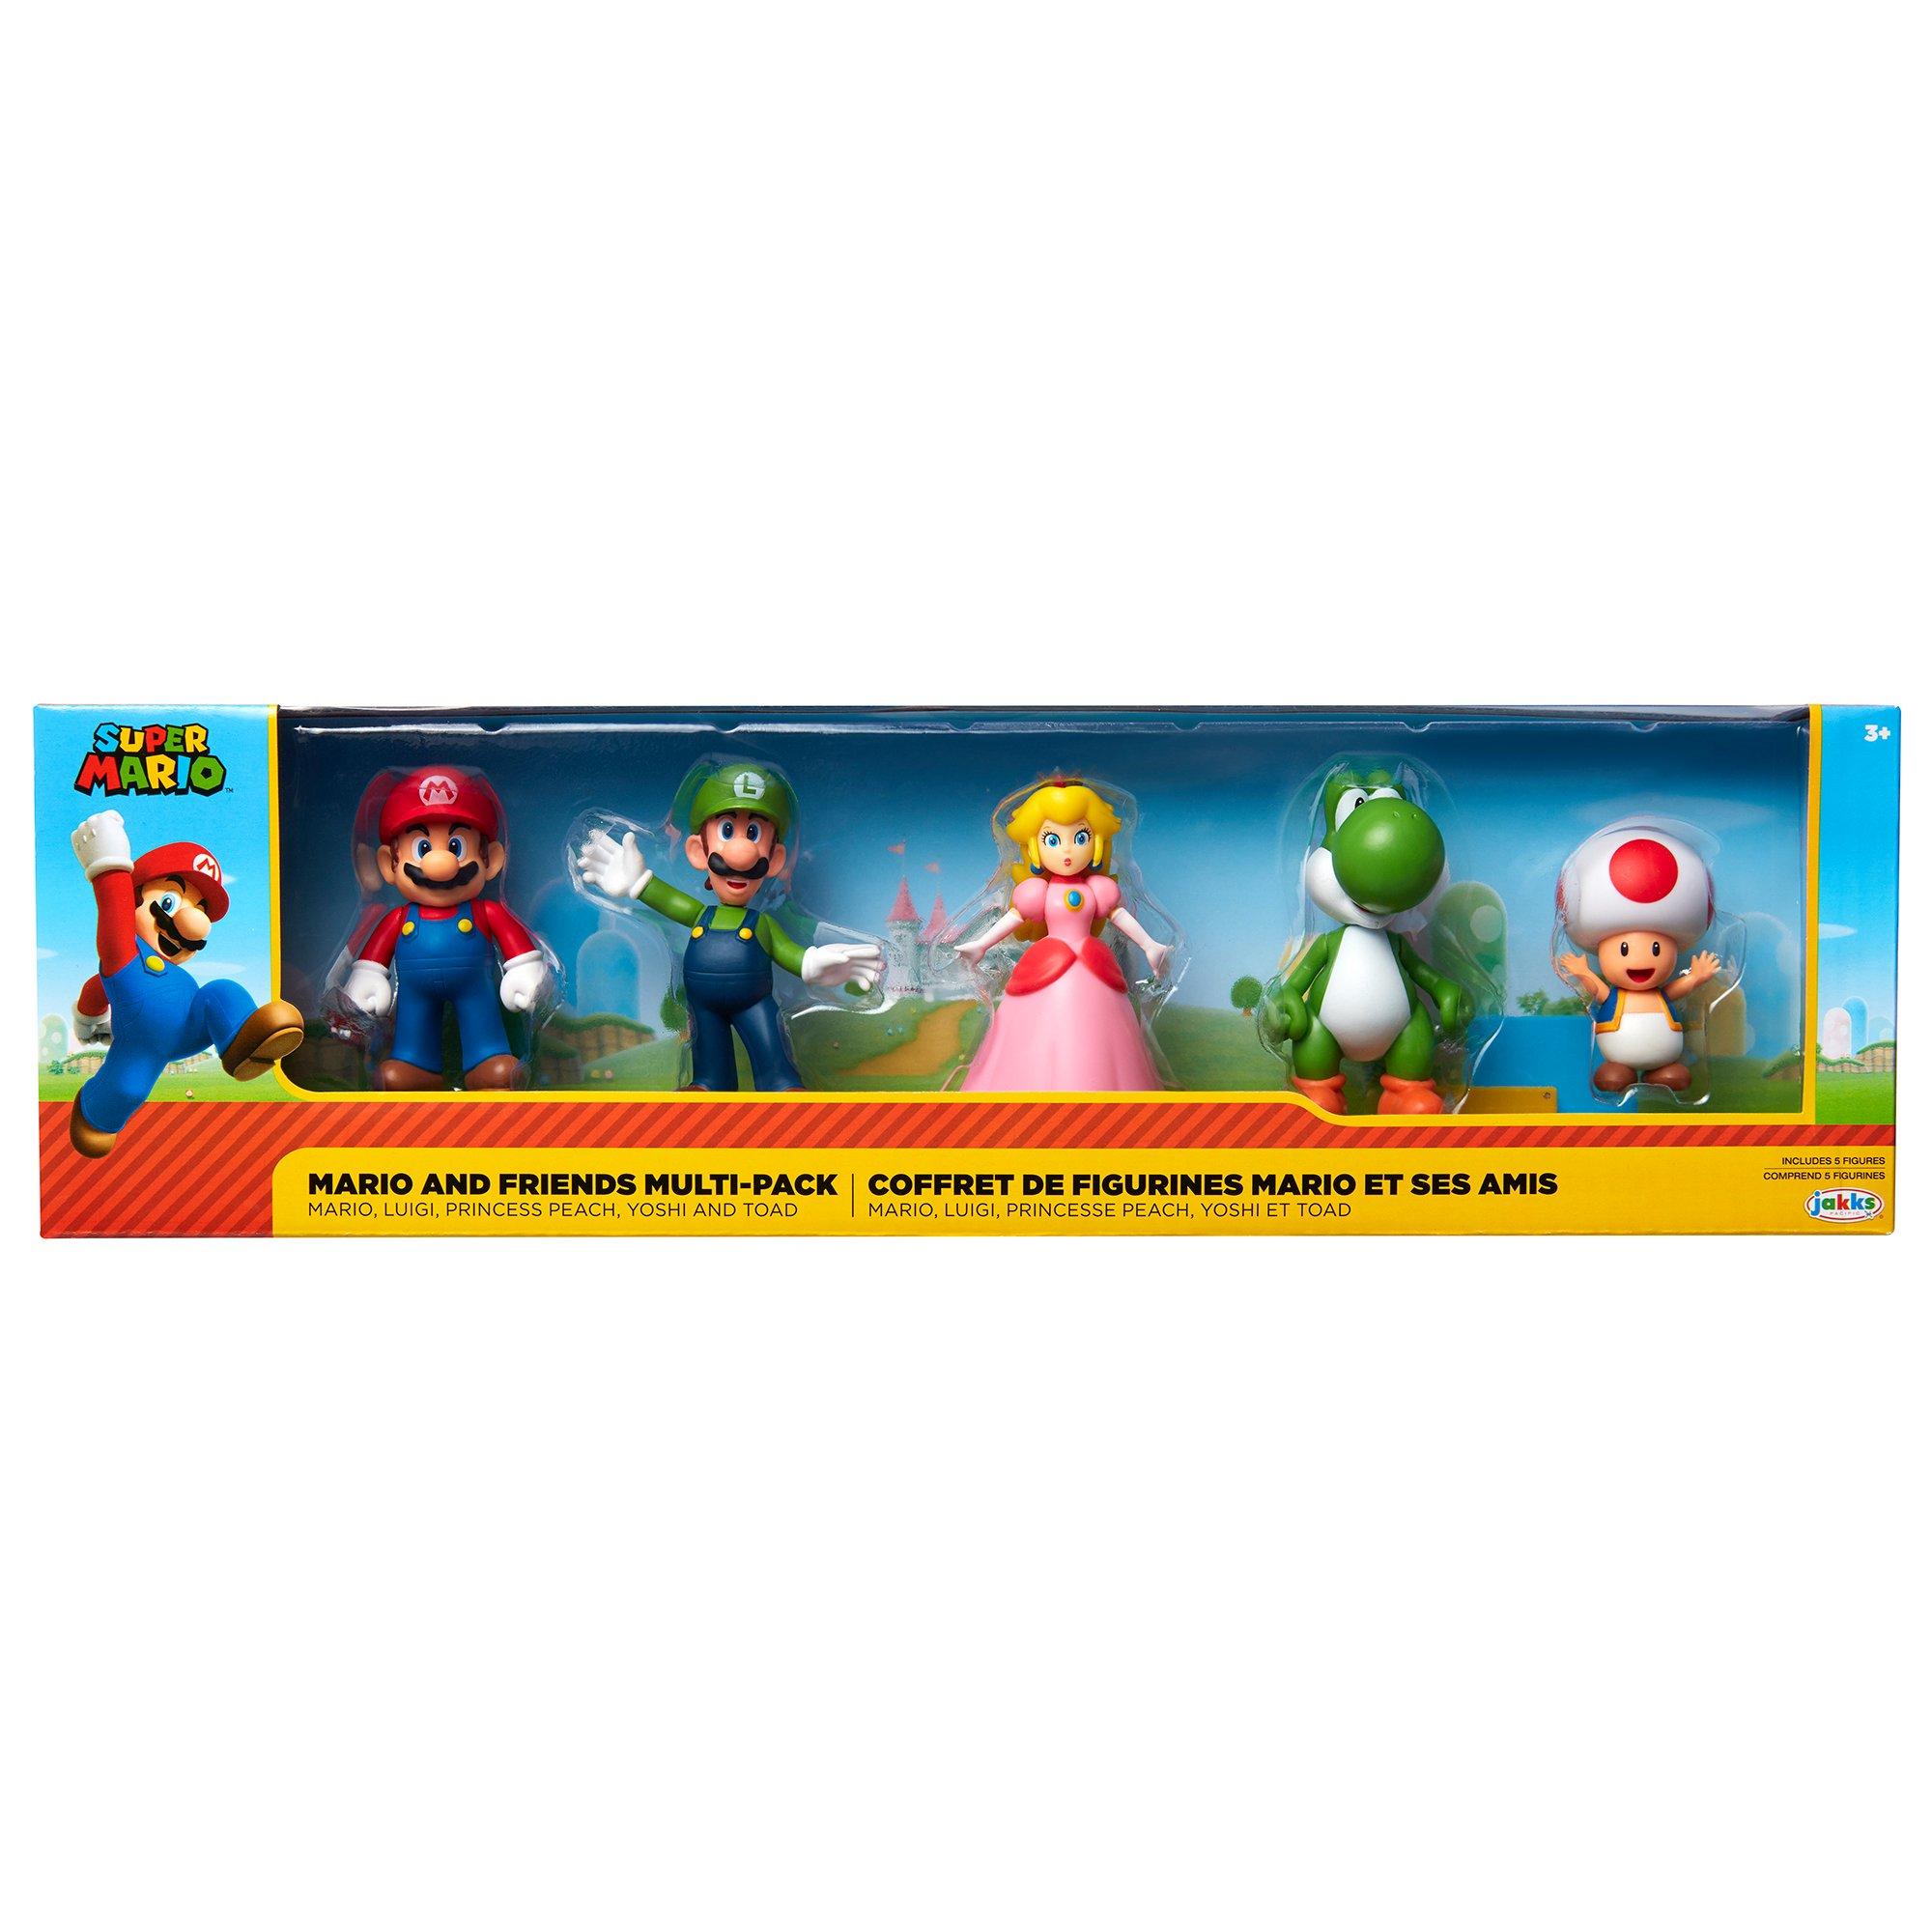 Jakks Pacific Super Mario Bros. Mario and Friends Multi-Pack